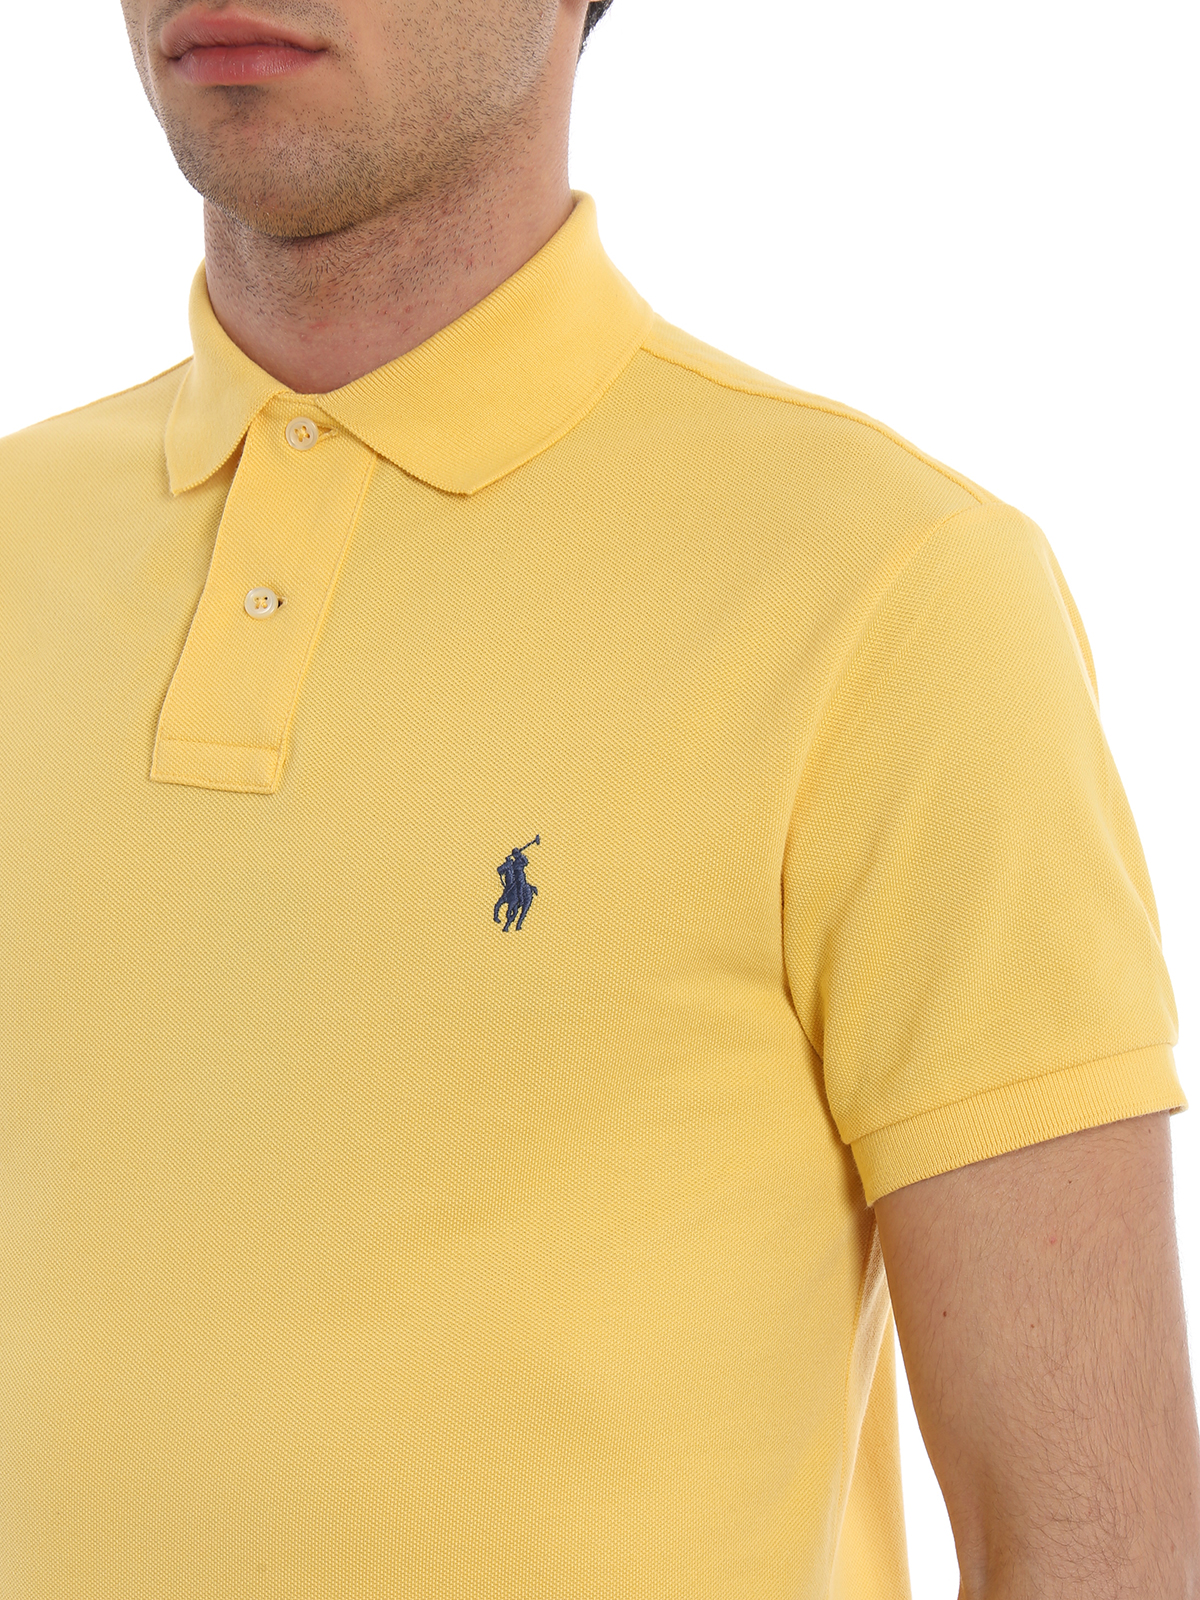 ralph lauren yellow polo shirt